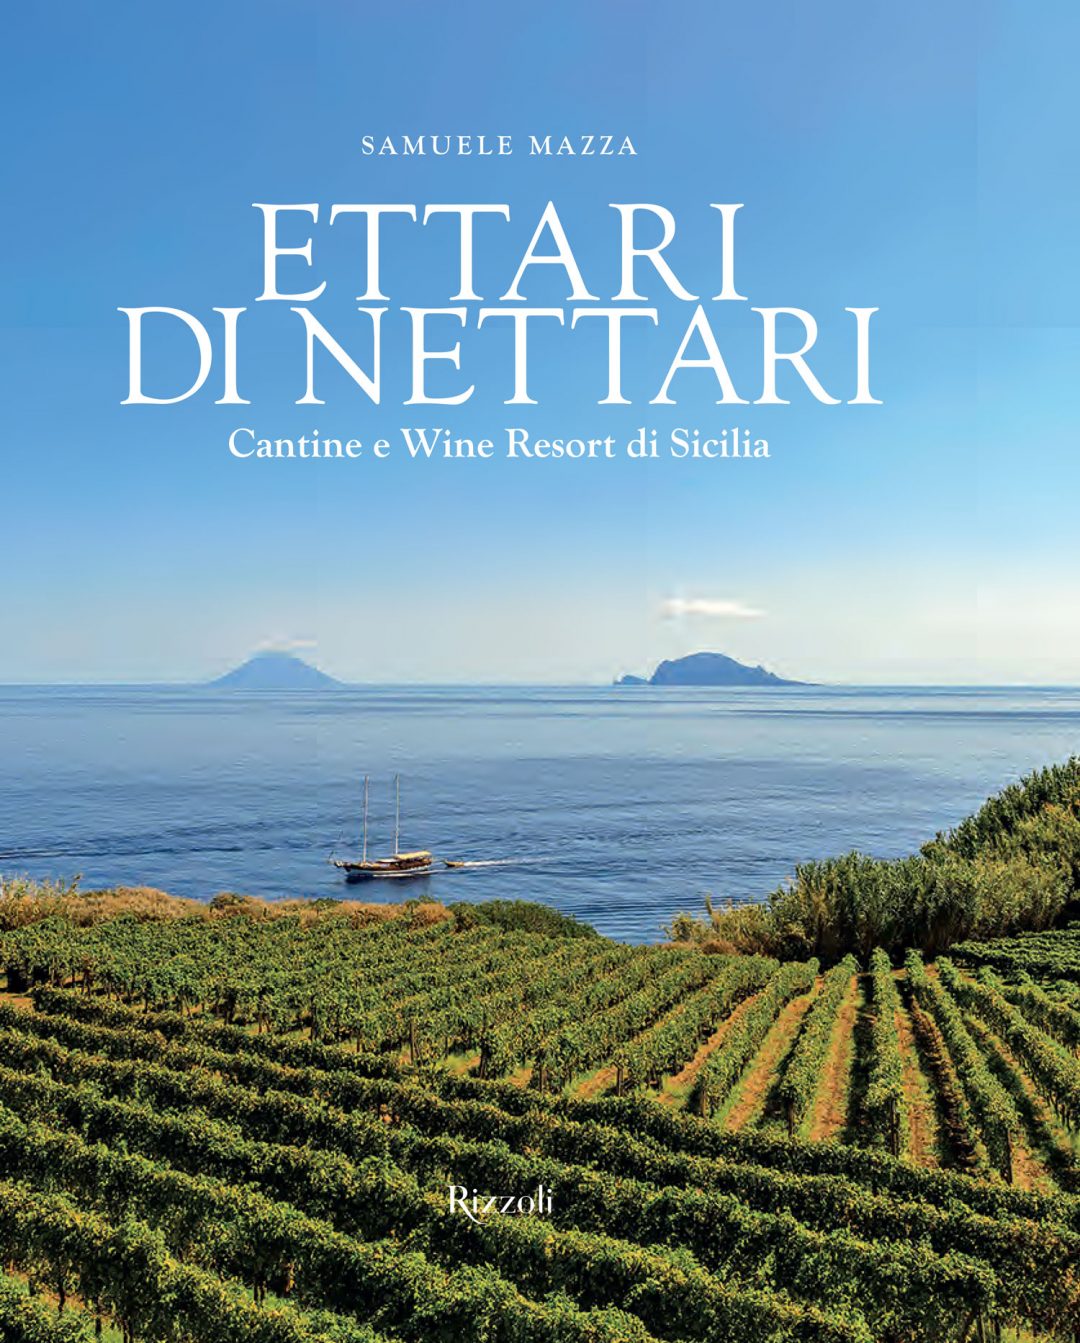 Cantine e wine resort in Sicilia: tra mare, vigneti e ospitalità di antica tradizione